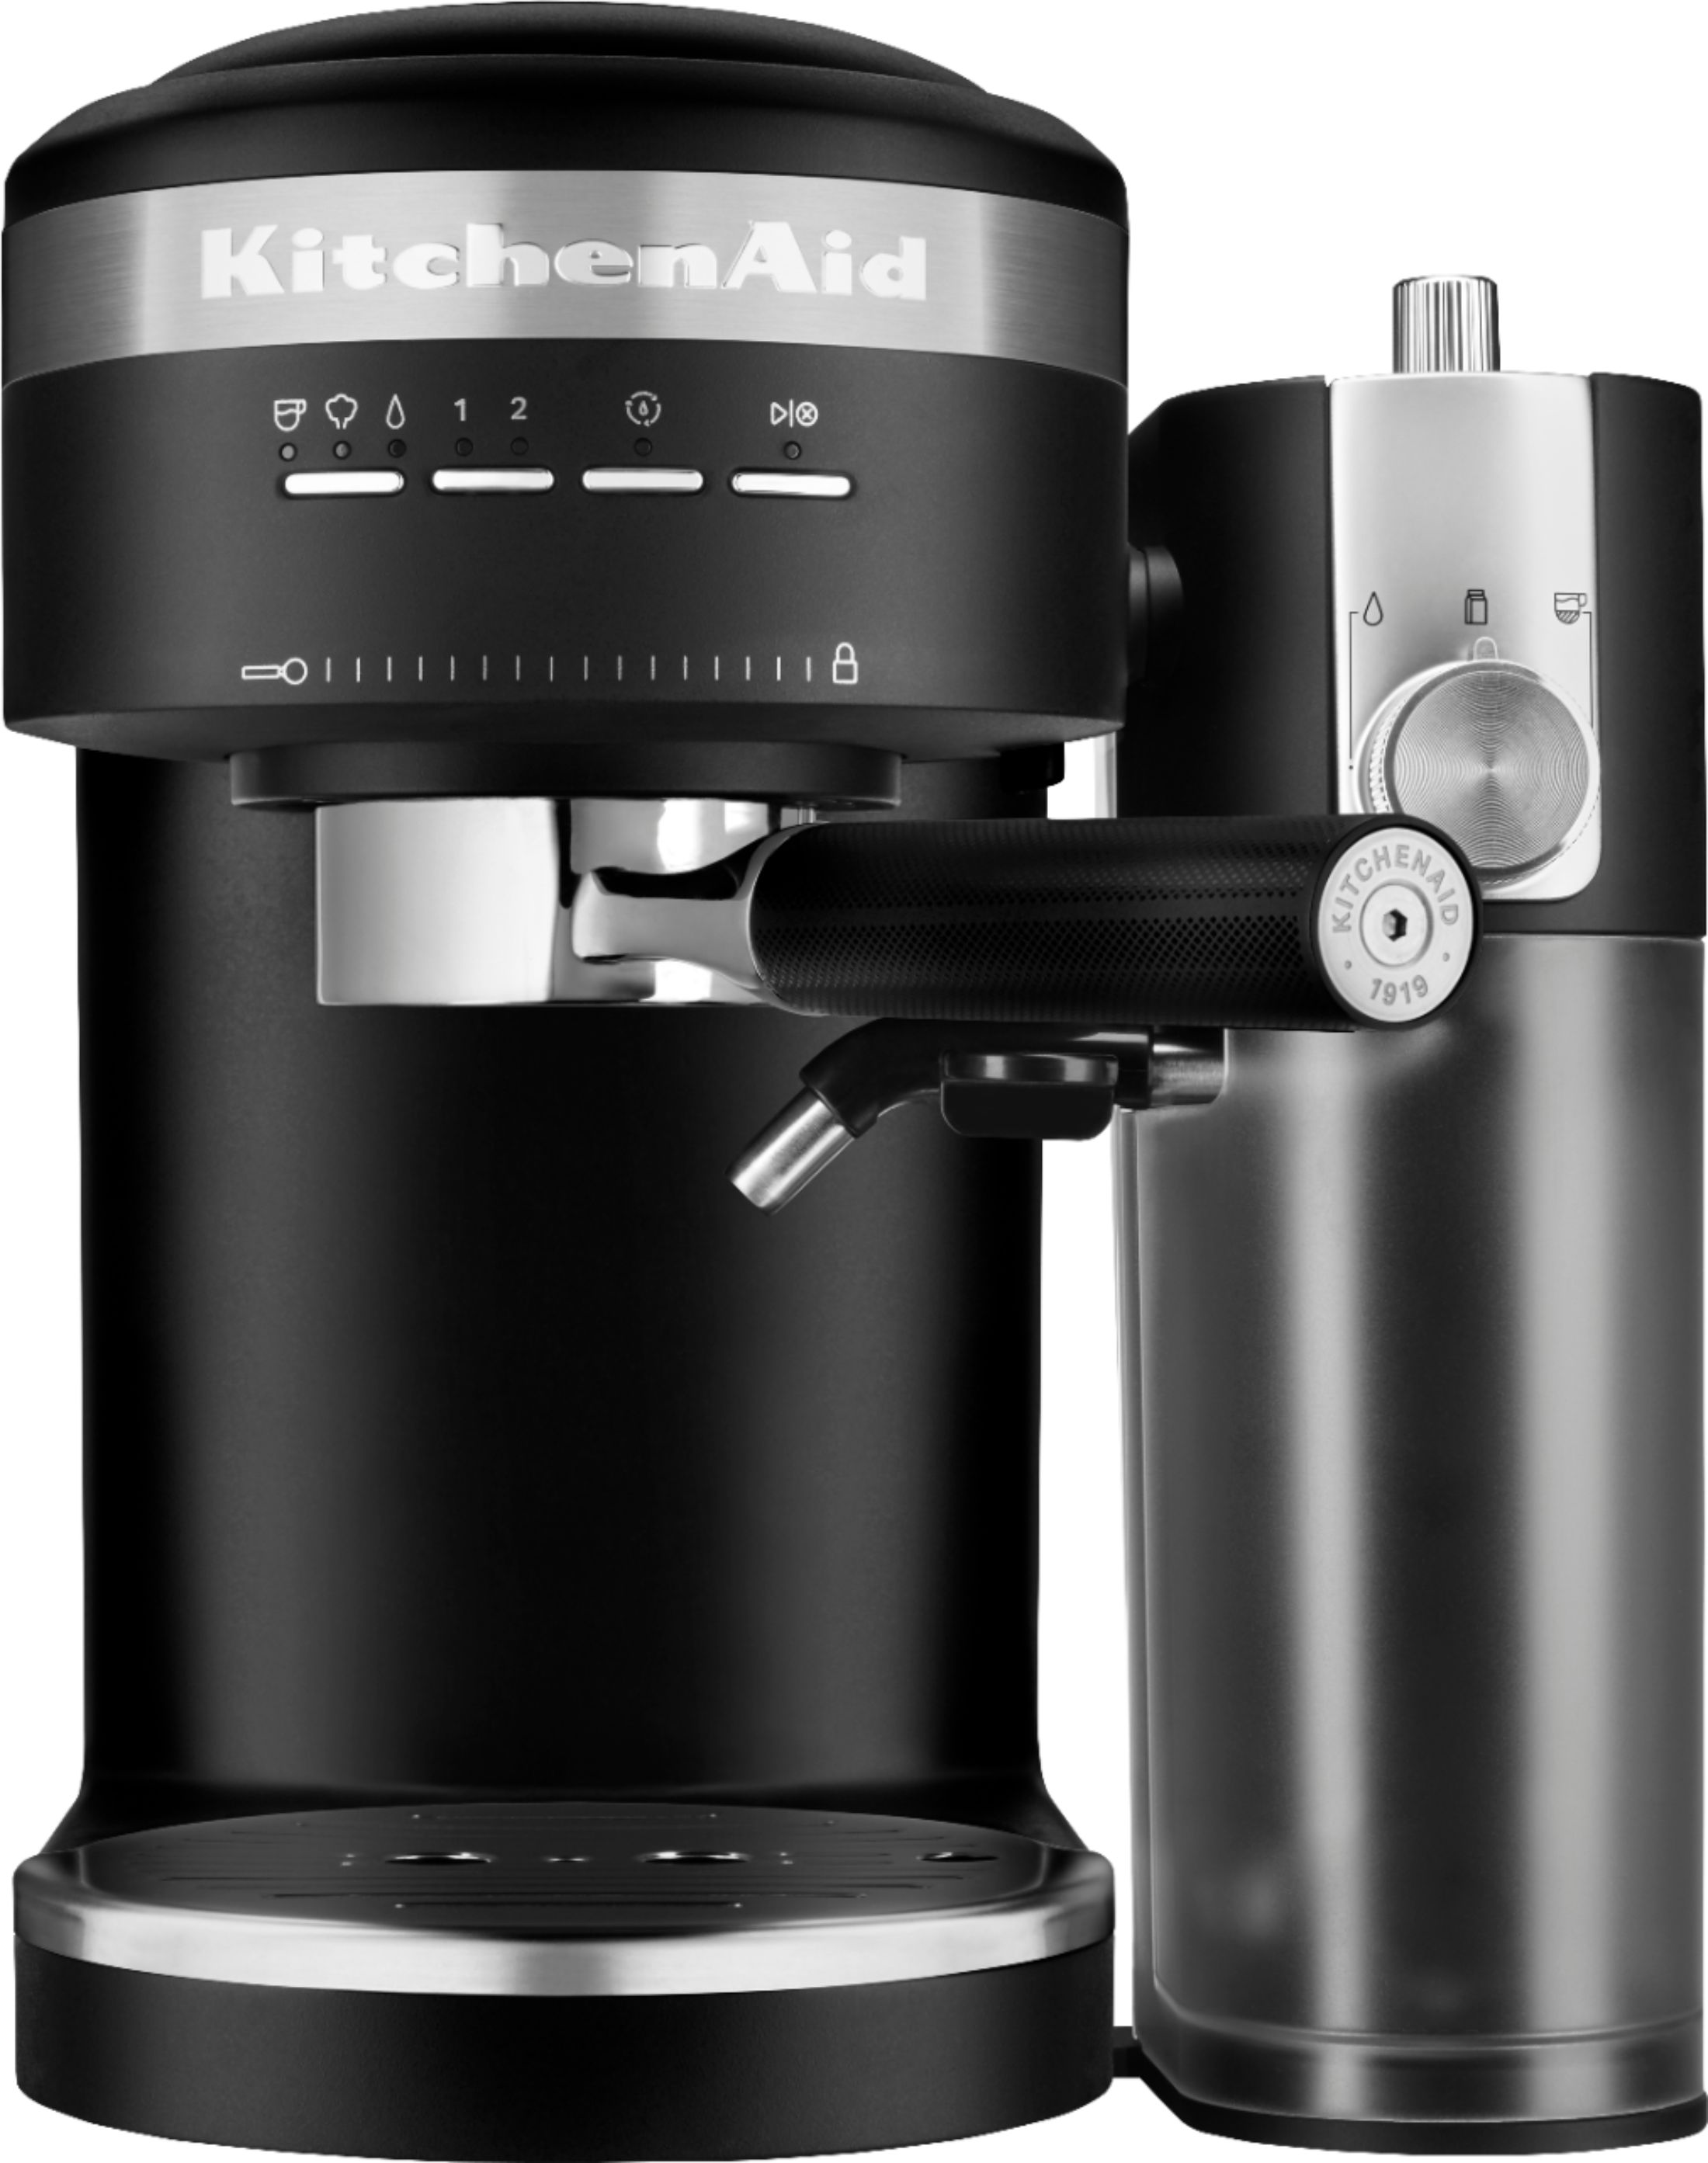 PREMIUM Espresso Machine and Cappuccino Maker Black w/ Milk Frother Attachment 